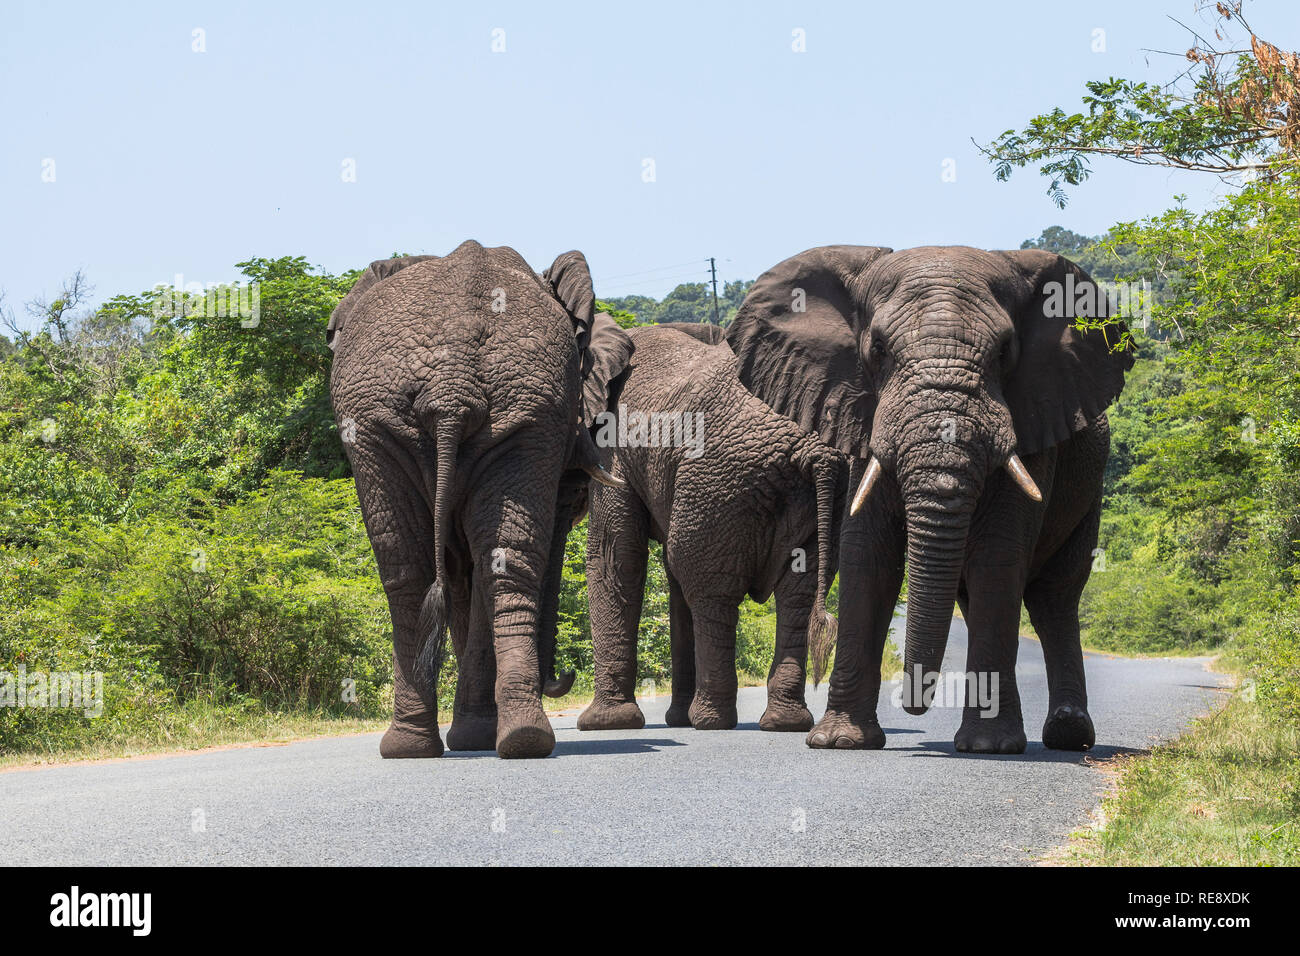 Big elephants walking on street in St. Lucia wetlands park Stock Photo